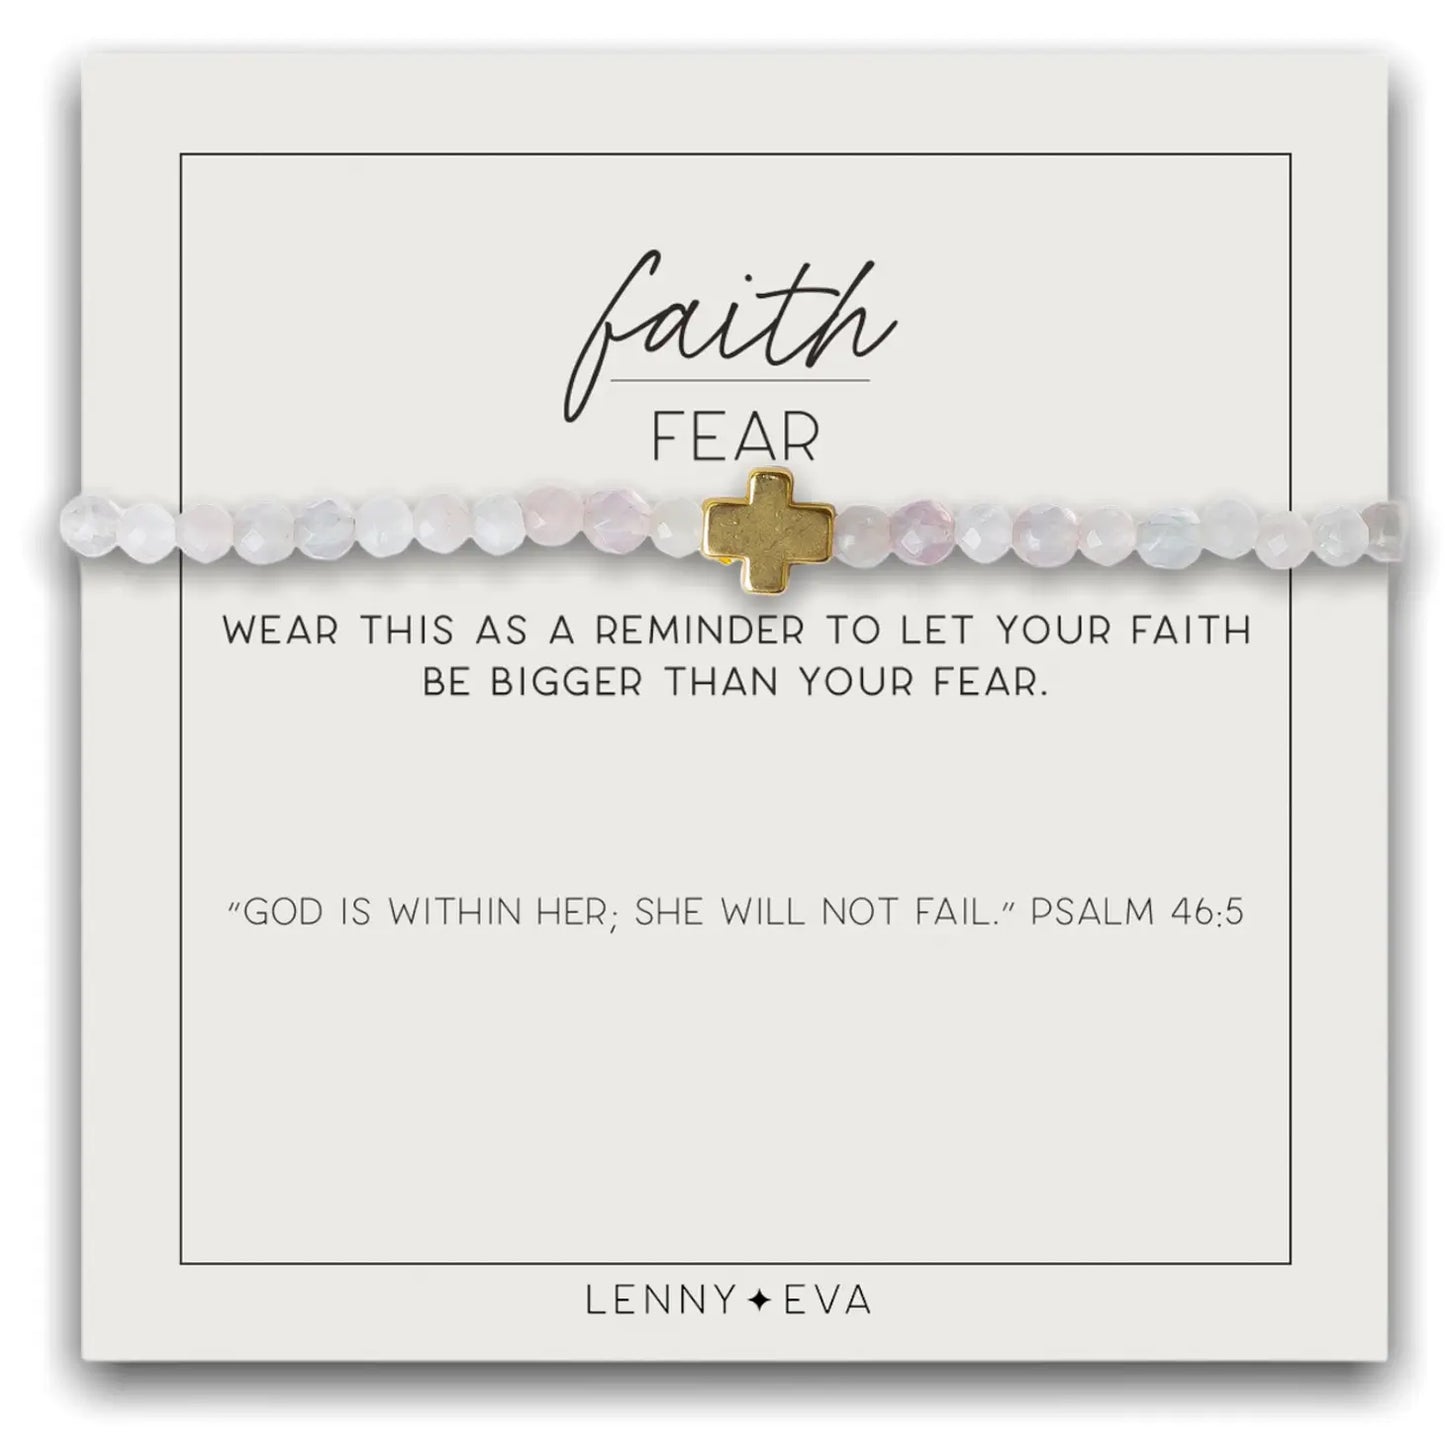 Faith Over Fear Bracelet